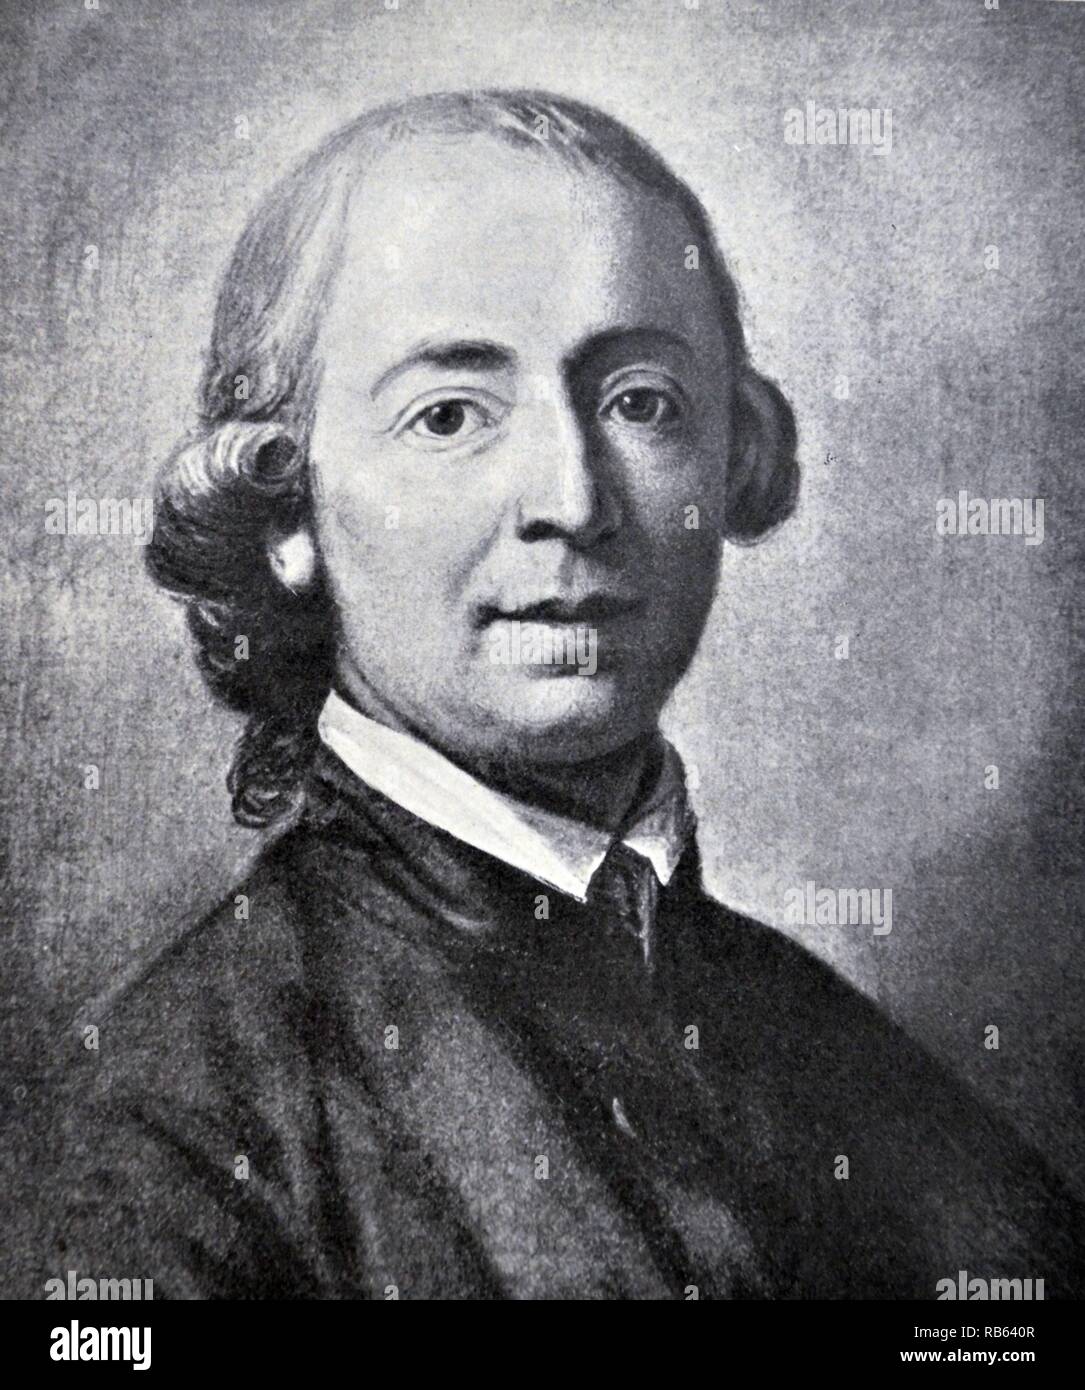 Johann Gottfried von Herder (1744-1803) fu un filosofo tedesco, teologo, poeta e critico letterario. Egli è associato con i periodi di illuminismo, Sturm und Drang e classicismo di Weimar Foto Stock